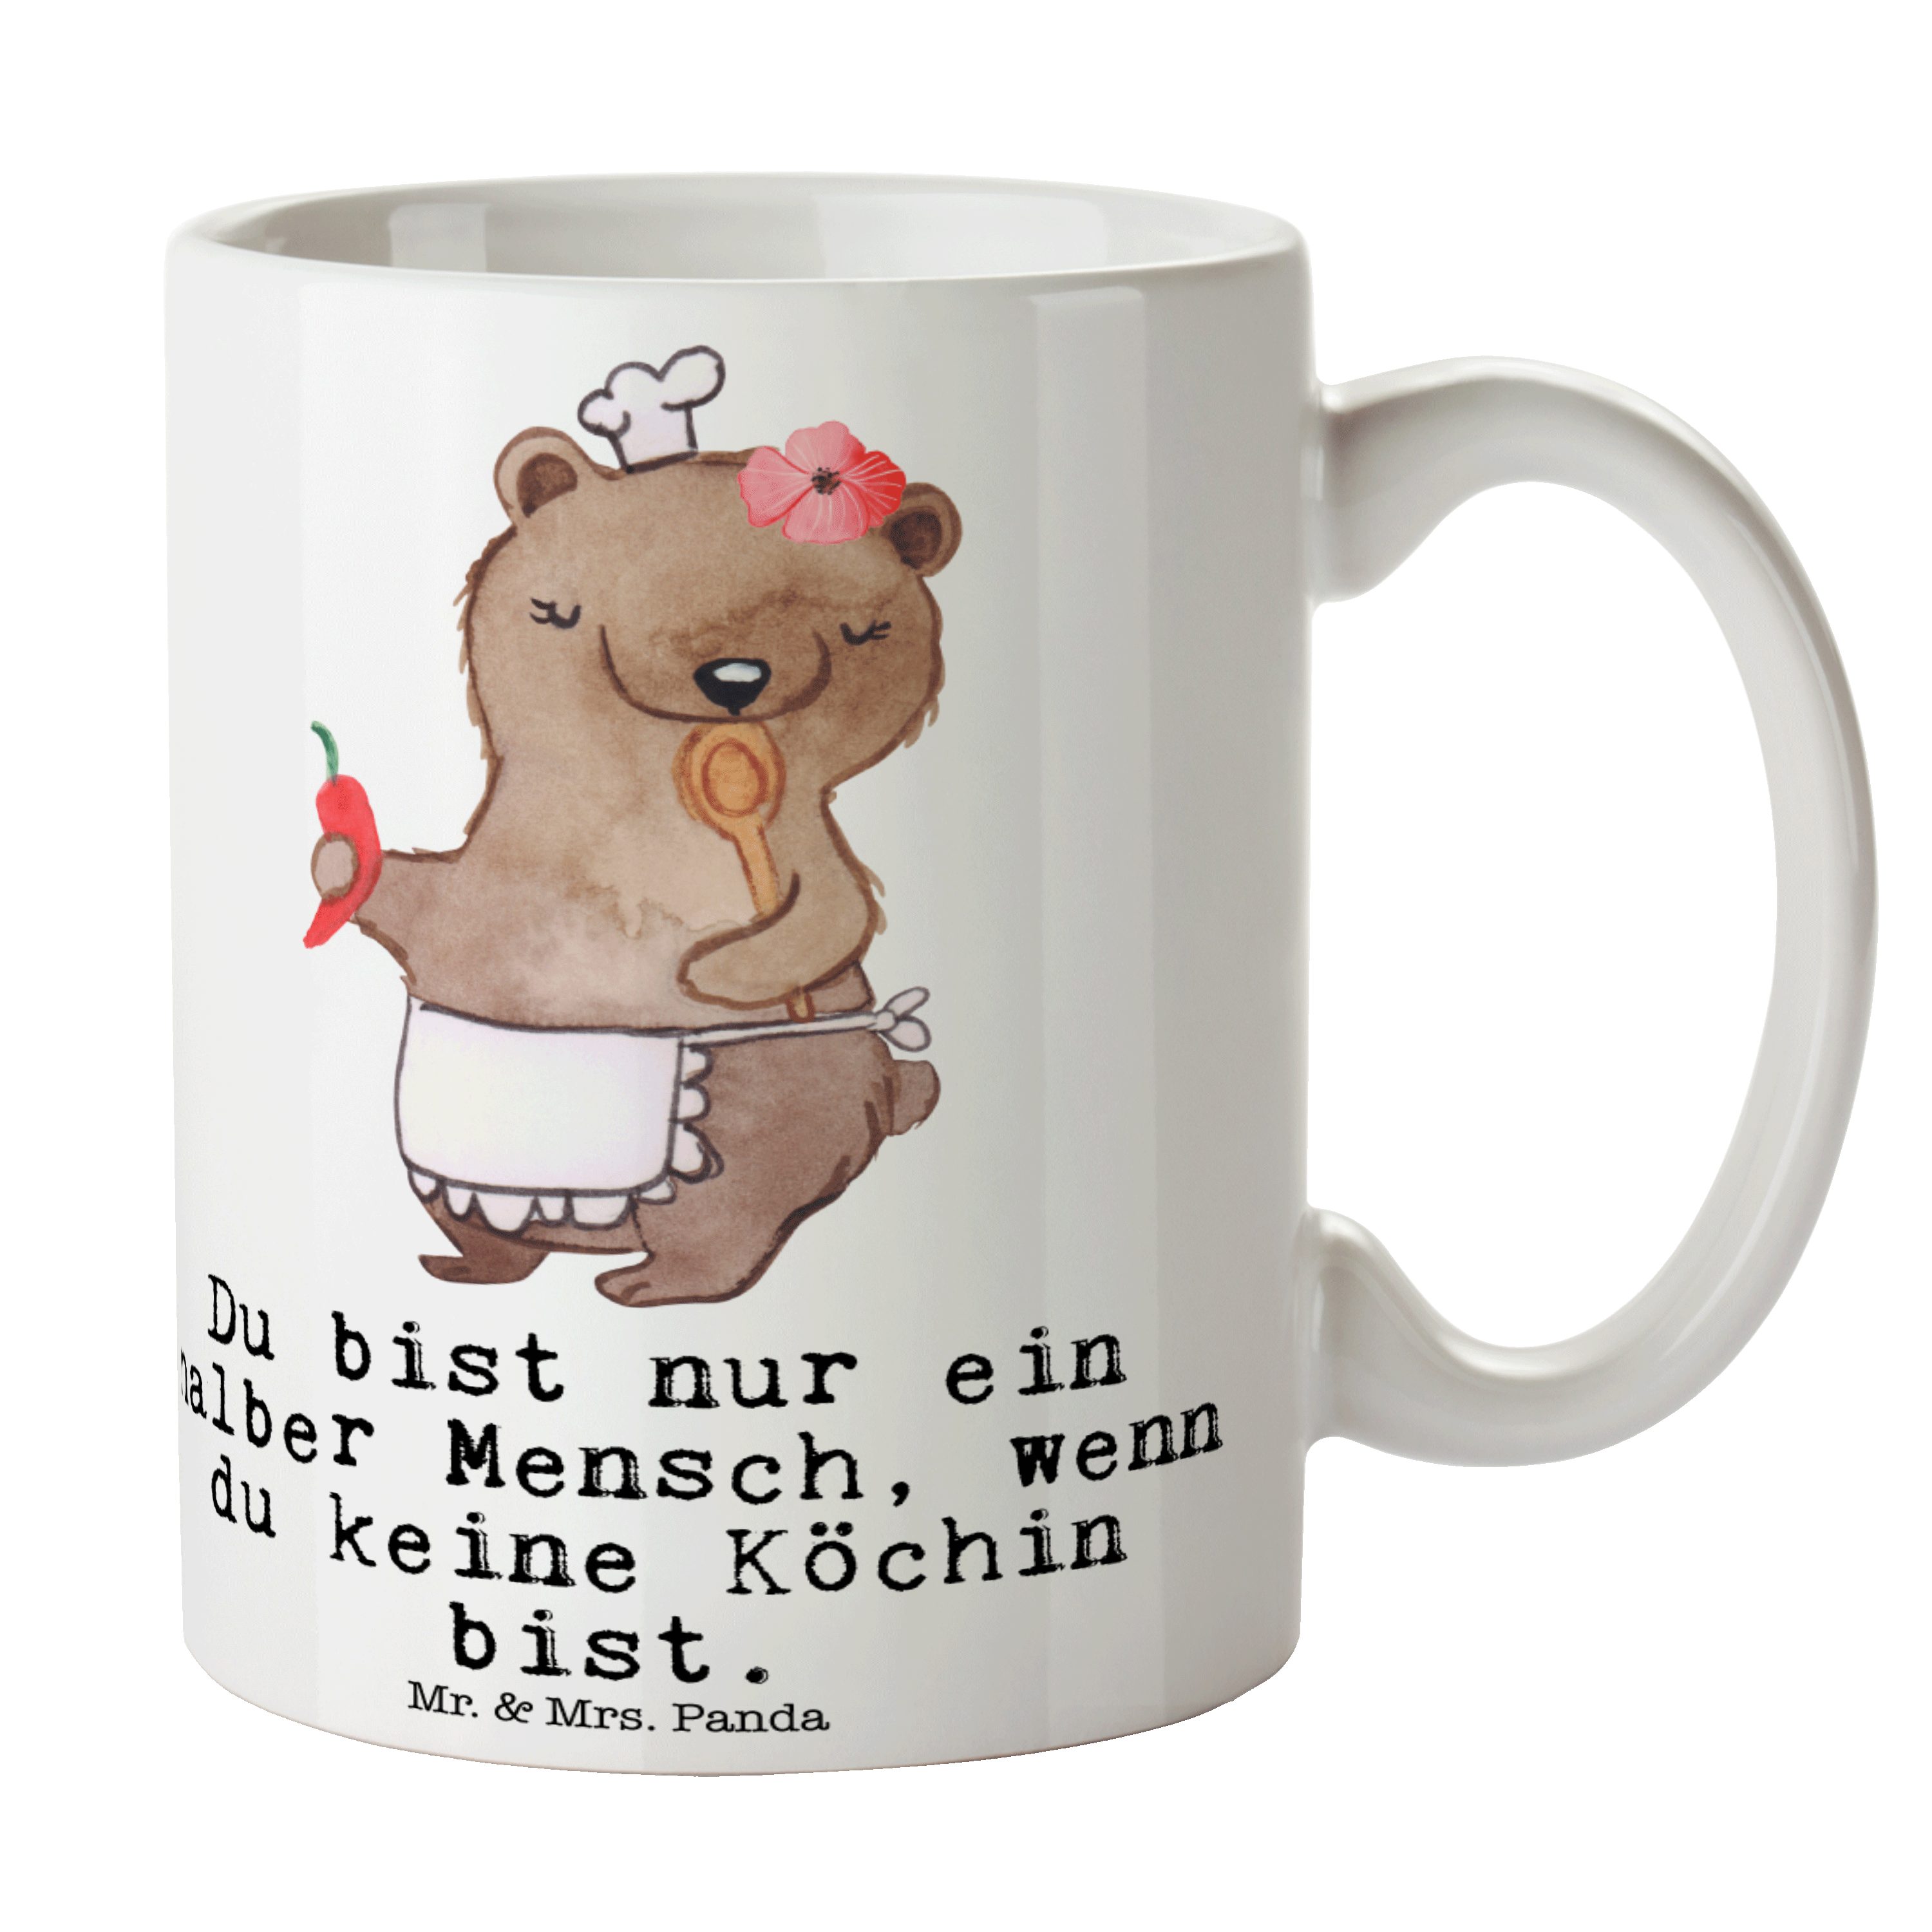 Mr. & Mrs. Panda Tasse Köchin mit Herz - Weiß - Geschenk, Jubiläum, Hobbykoch, Keramiktasse, Keramik